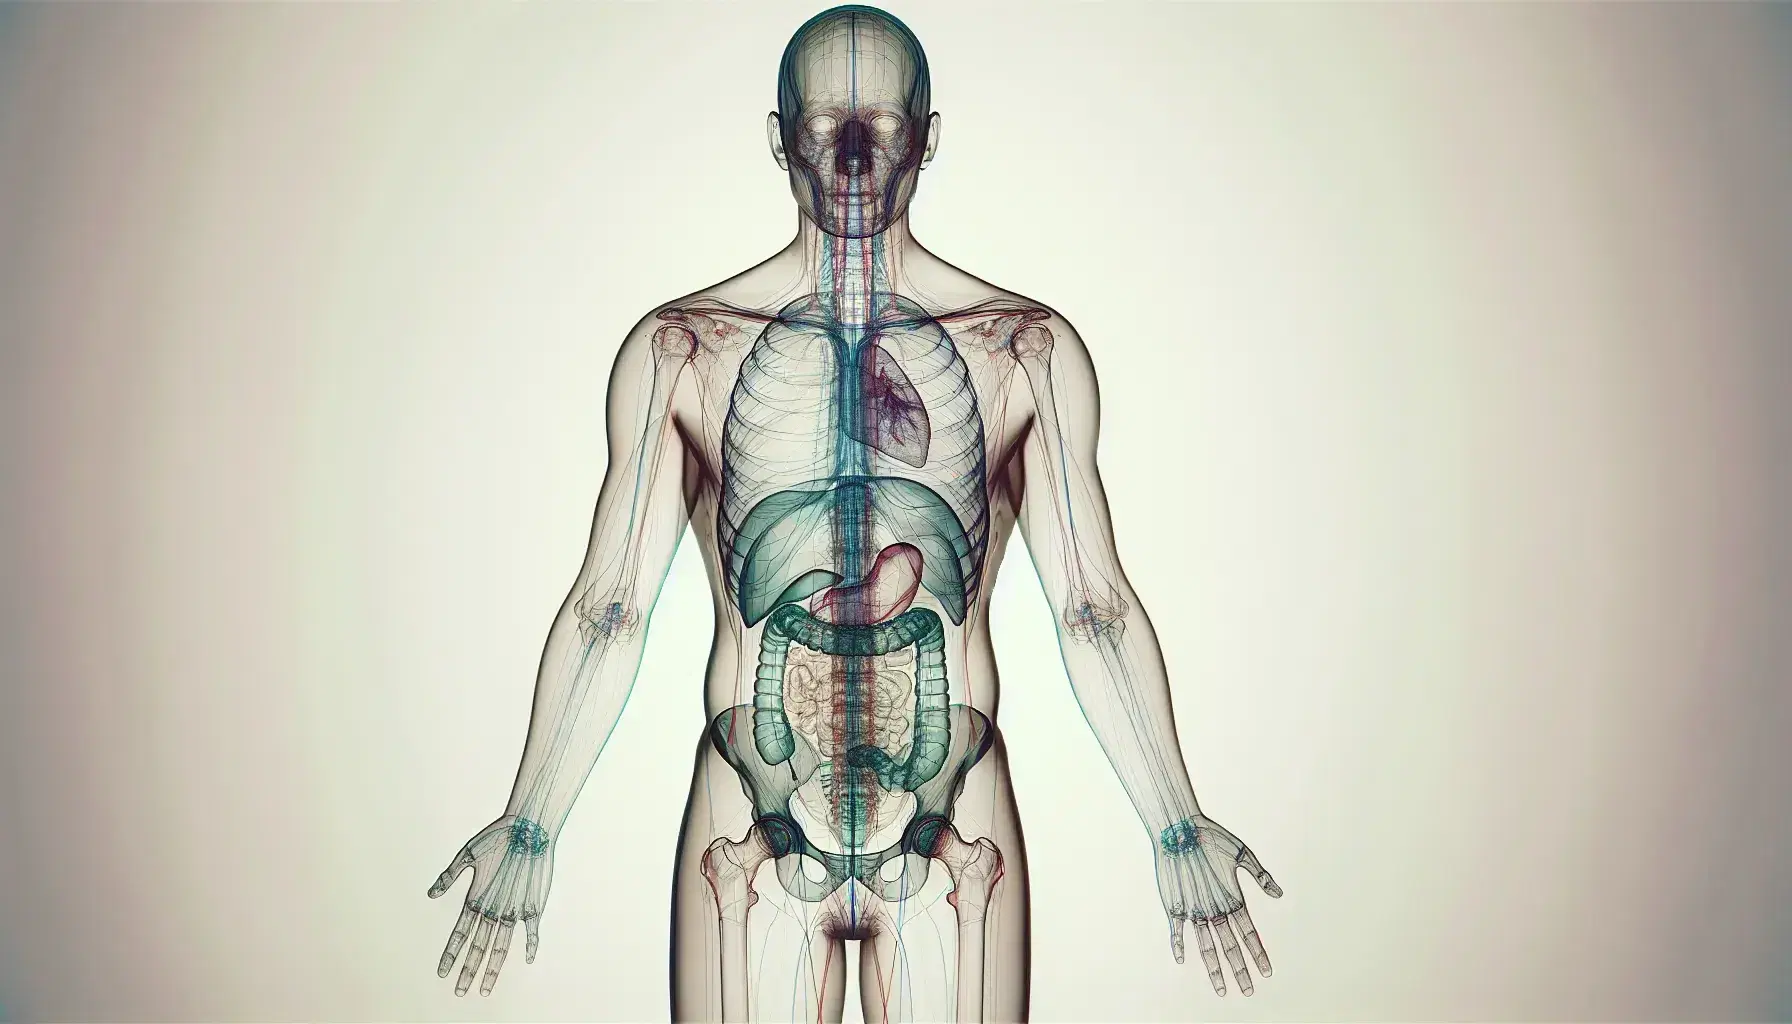 Figura humana transparente mostrando cavidades internas y dividida por líneas imaginarias que representan planos y ejes corporales, con tonos suaves y sin detalles anatómicos explícitos.